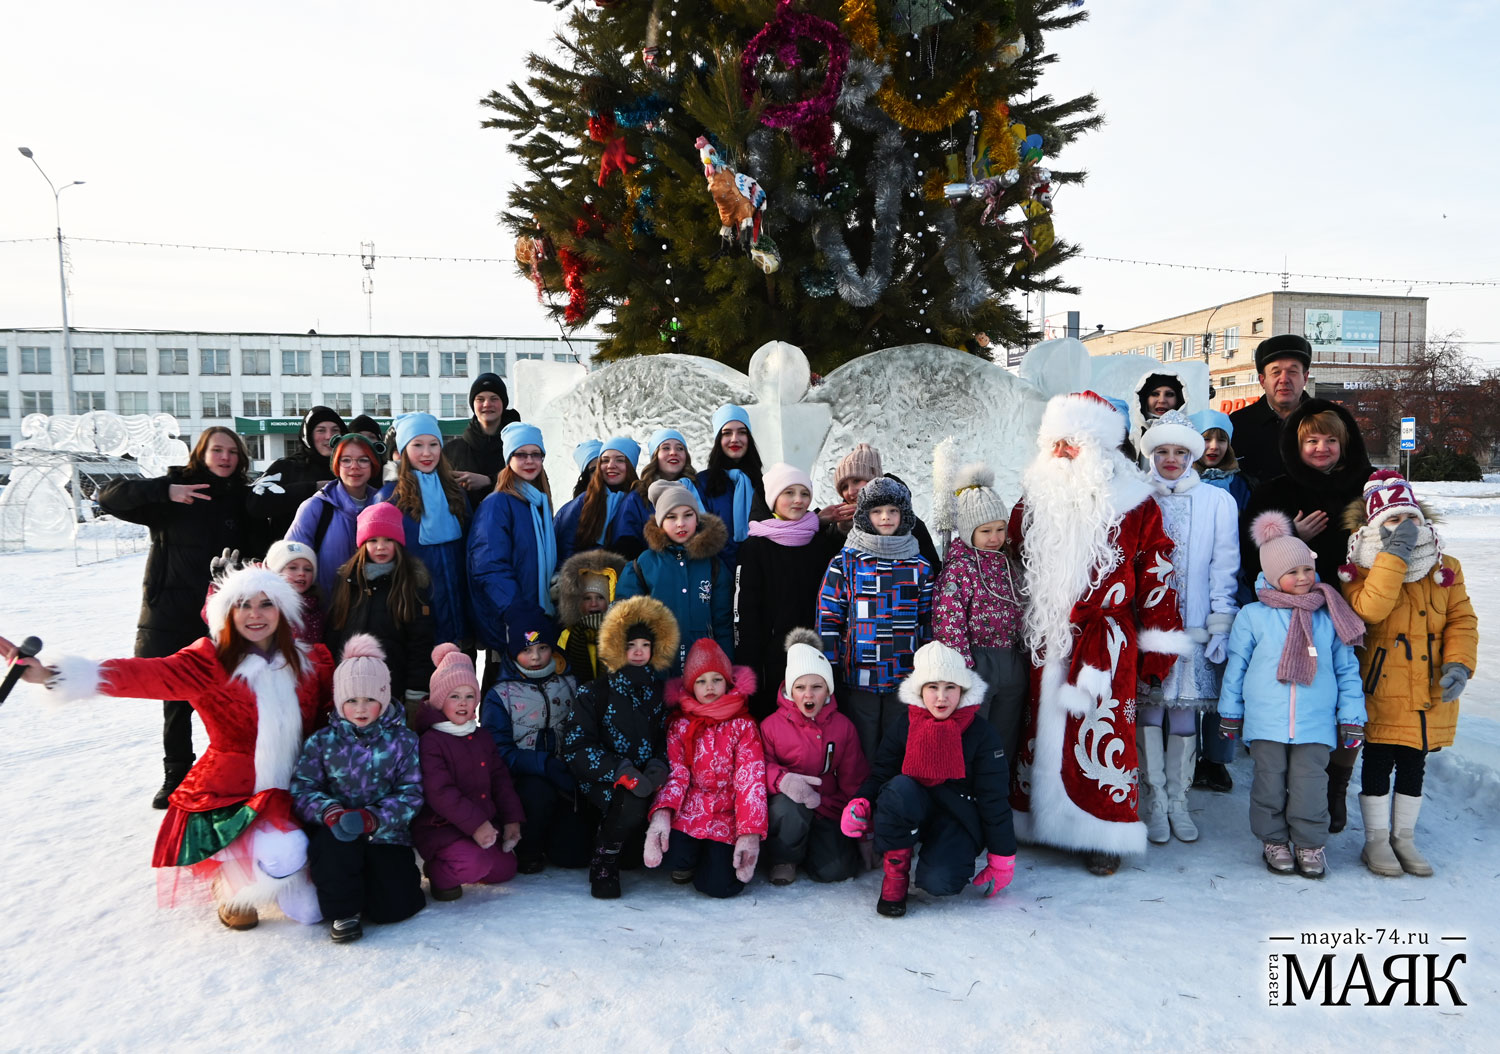 Зимняя площадка для детских забав ждет гостей! В селе Миасском открыли ледовый городок